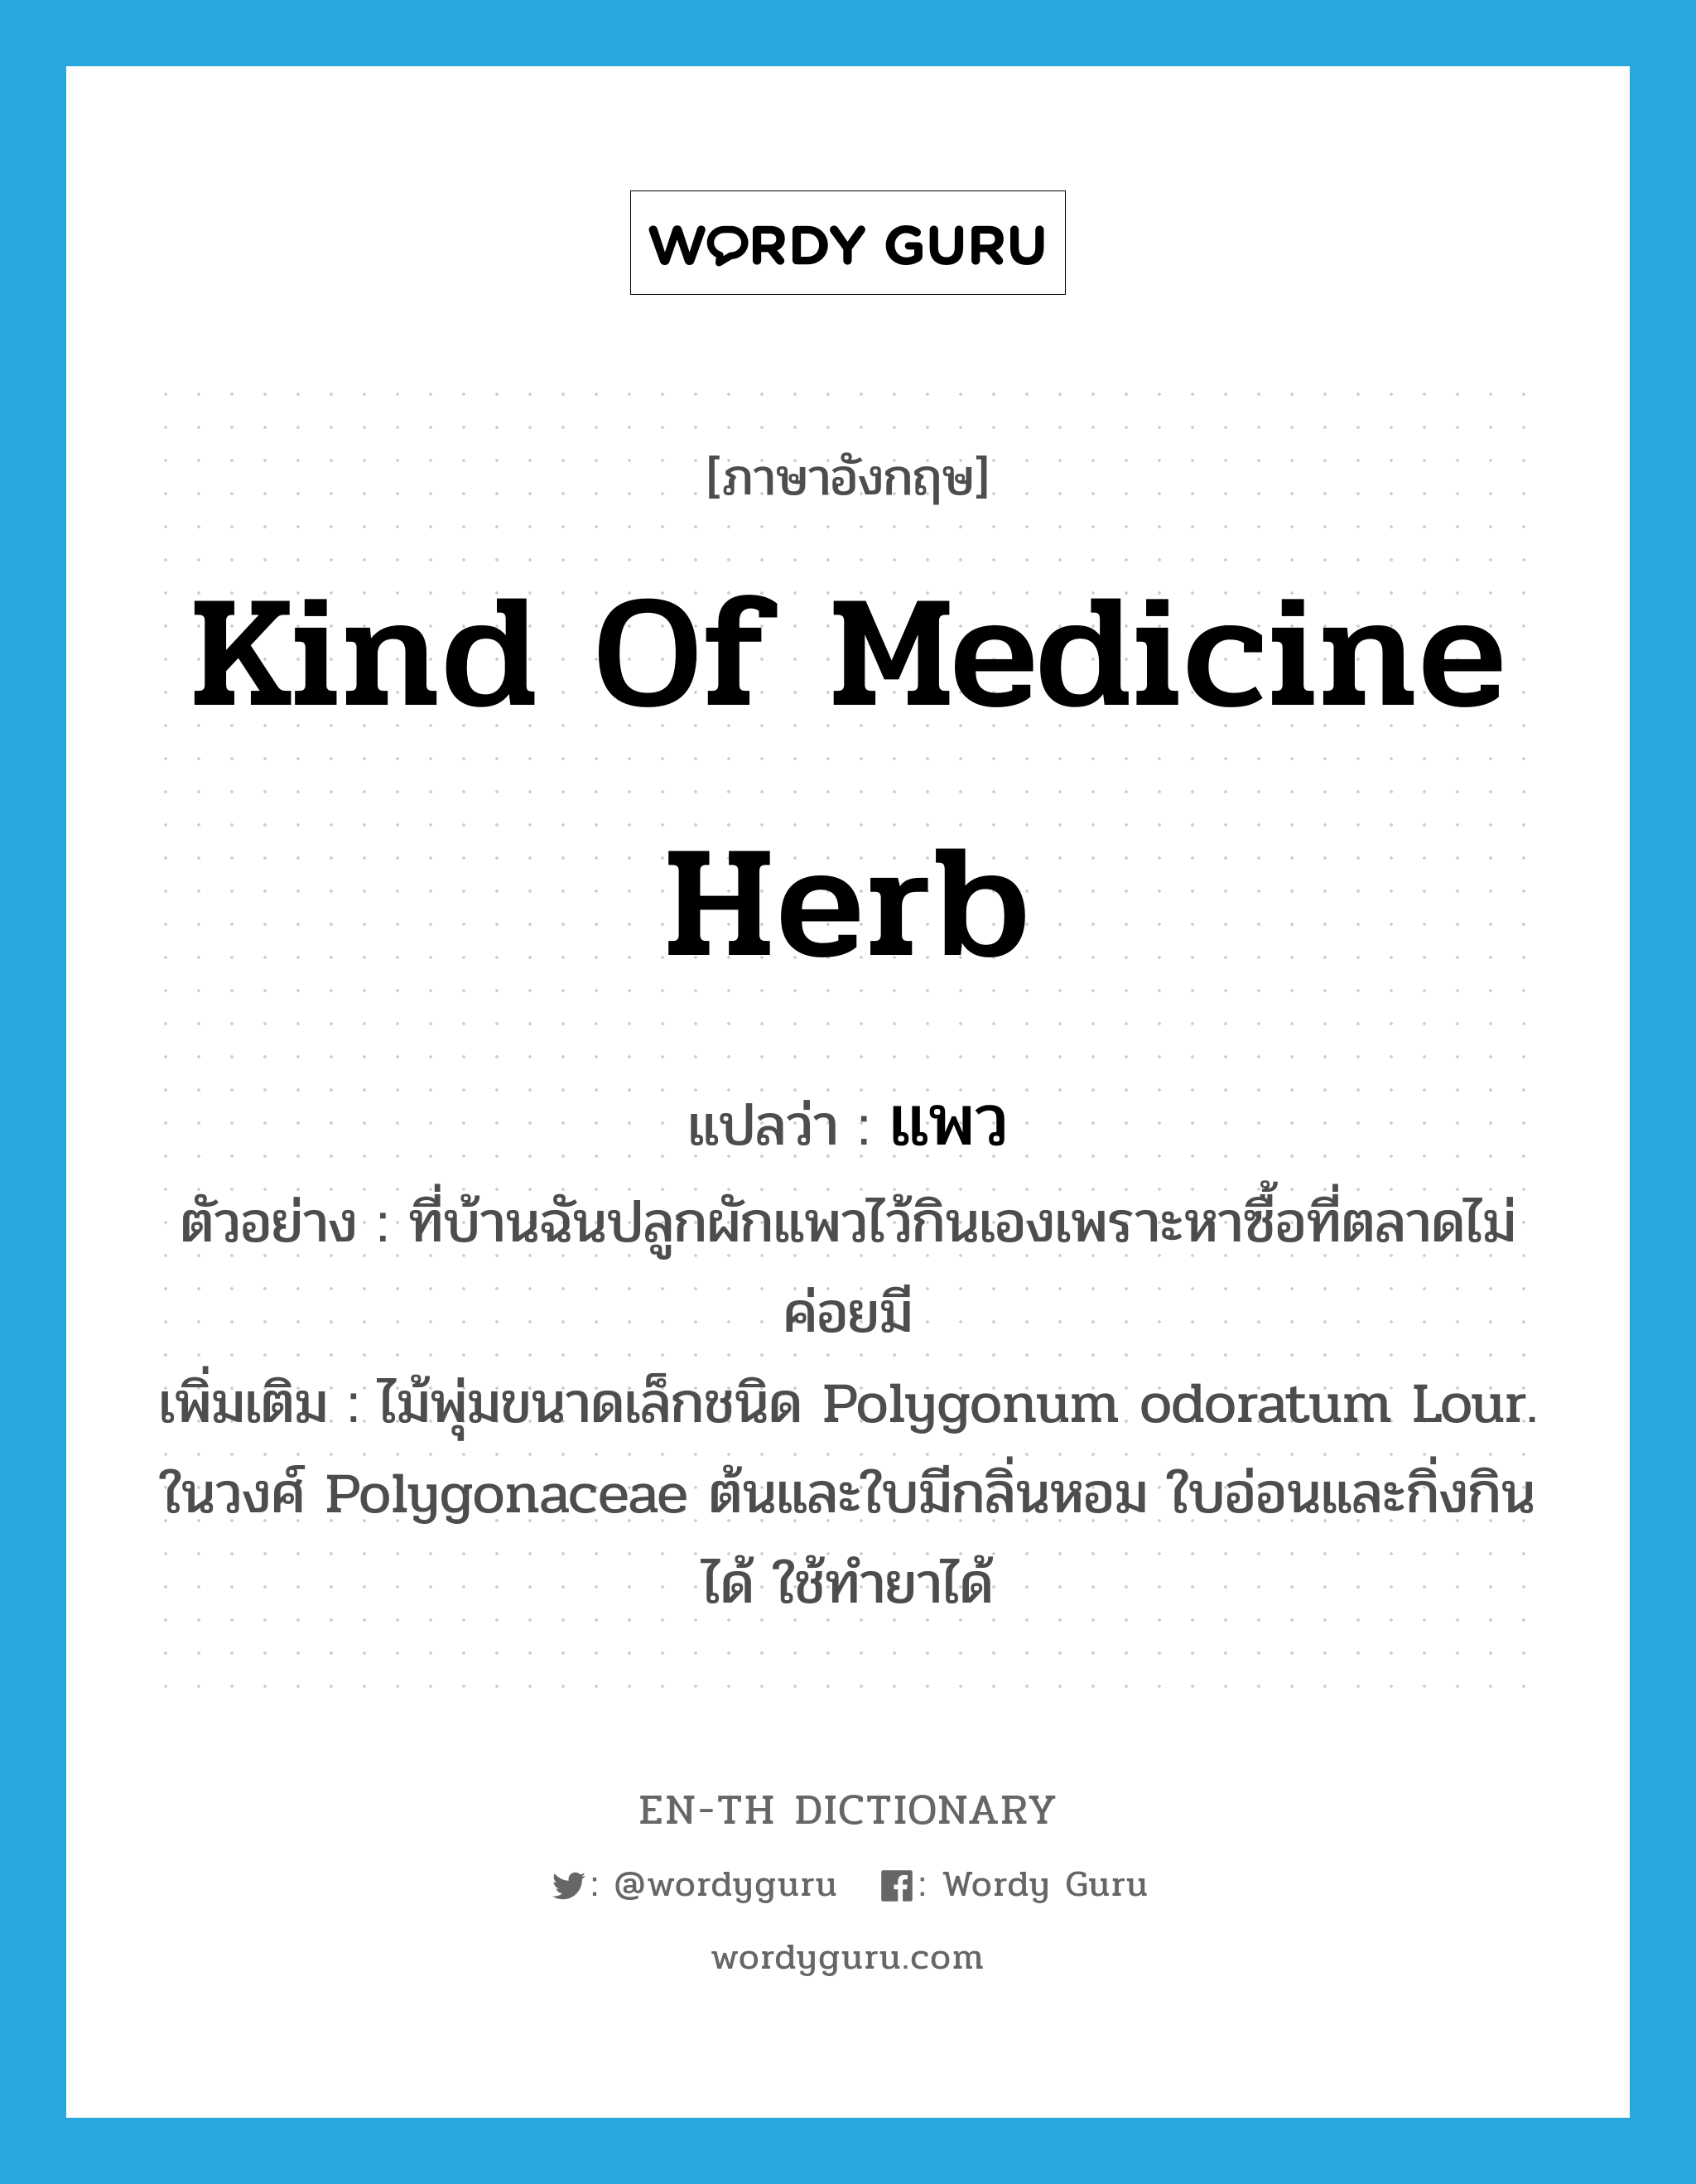 แพว ภาษาอังกฤษ?, คำศัพท์ภาษาอังกฤษ แพว แปลว่า kind of medicine herb ประเภท N ตัวอย่าง ที่บ้านฉันปลูกผักแพวไว้กินเองเพราะหาซื้อที่ตลาดไม่ค่อยมี เพิ่มเติม ไม้พุ่มขนาดเล็กชนิด Polygonum odoratum Lour. ในวงศ์ Polygonaceae ต้นและใบมีกลิ่นหอม ใบอ่อนและกิ่งกินได้ ใช้ทำยาได้ หมวด N